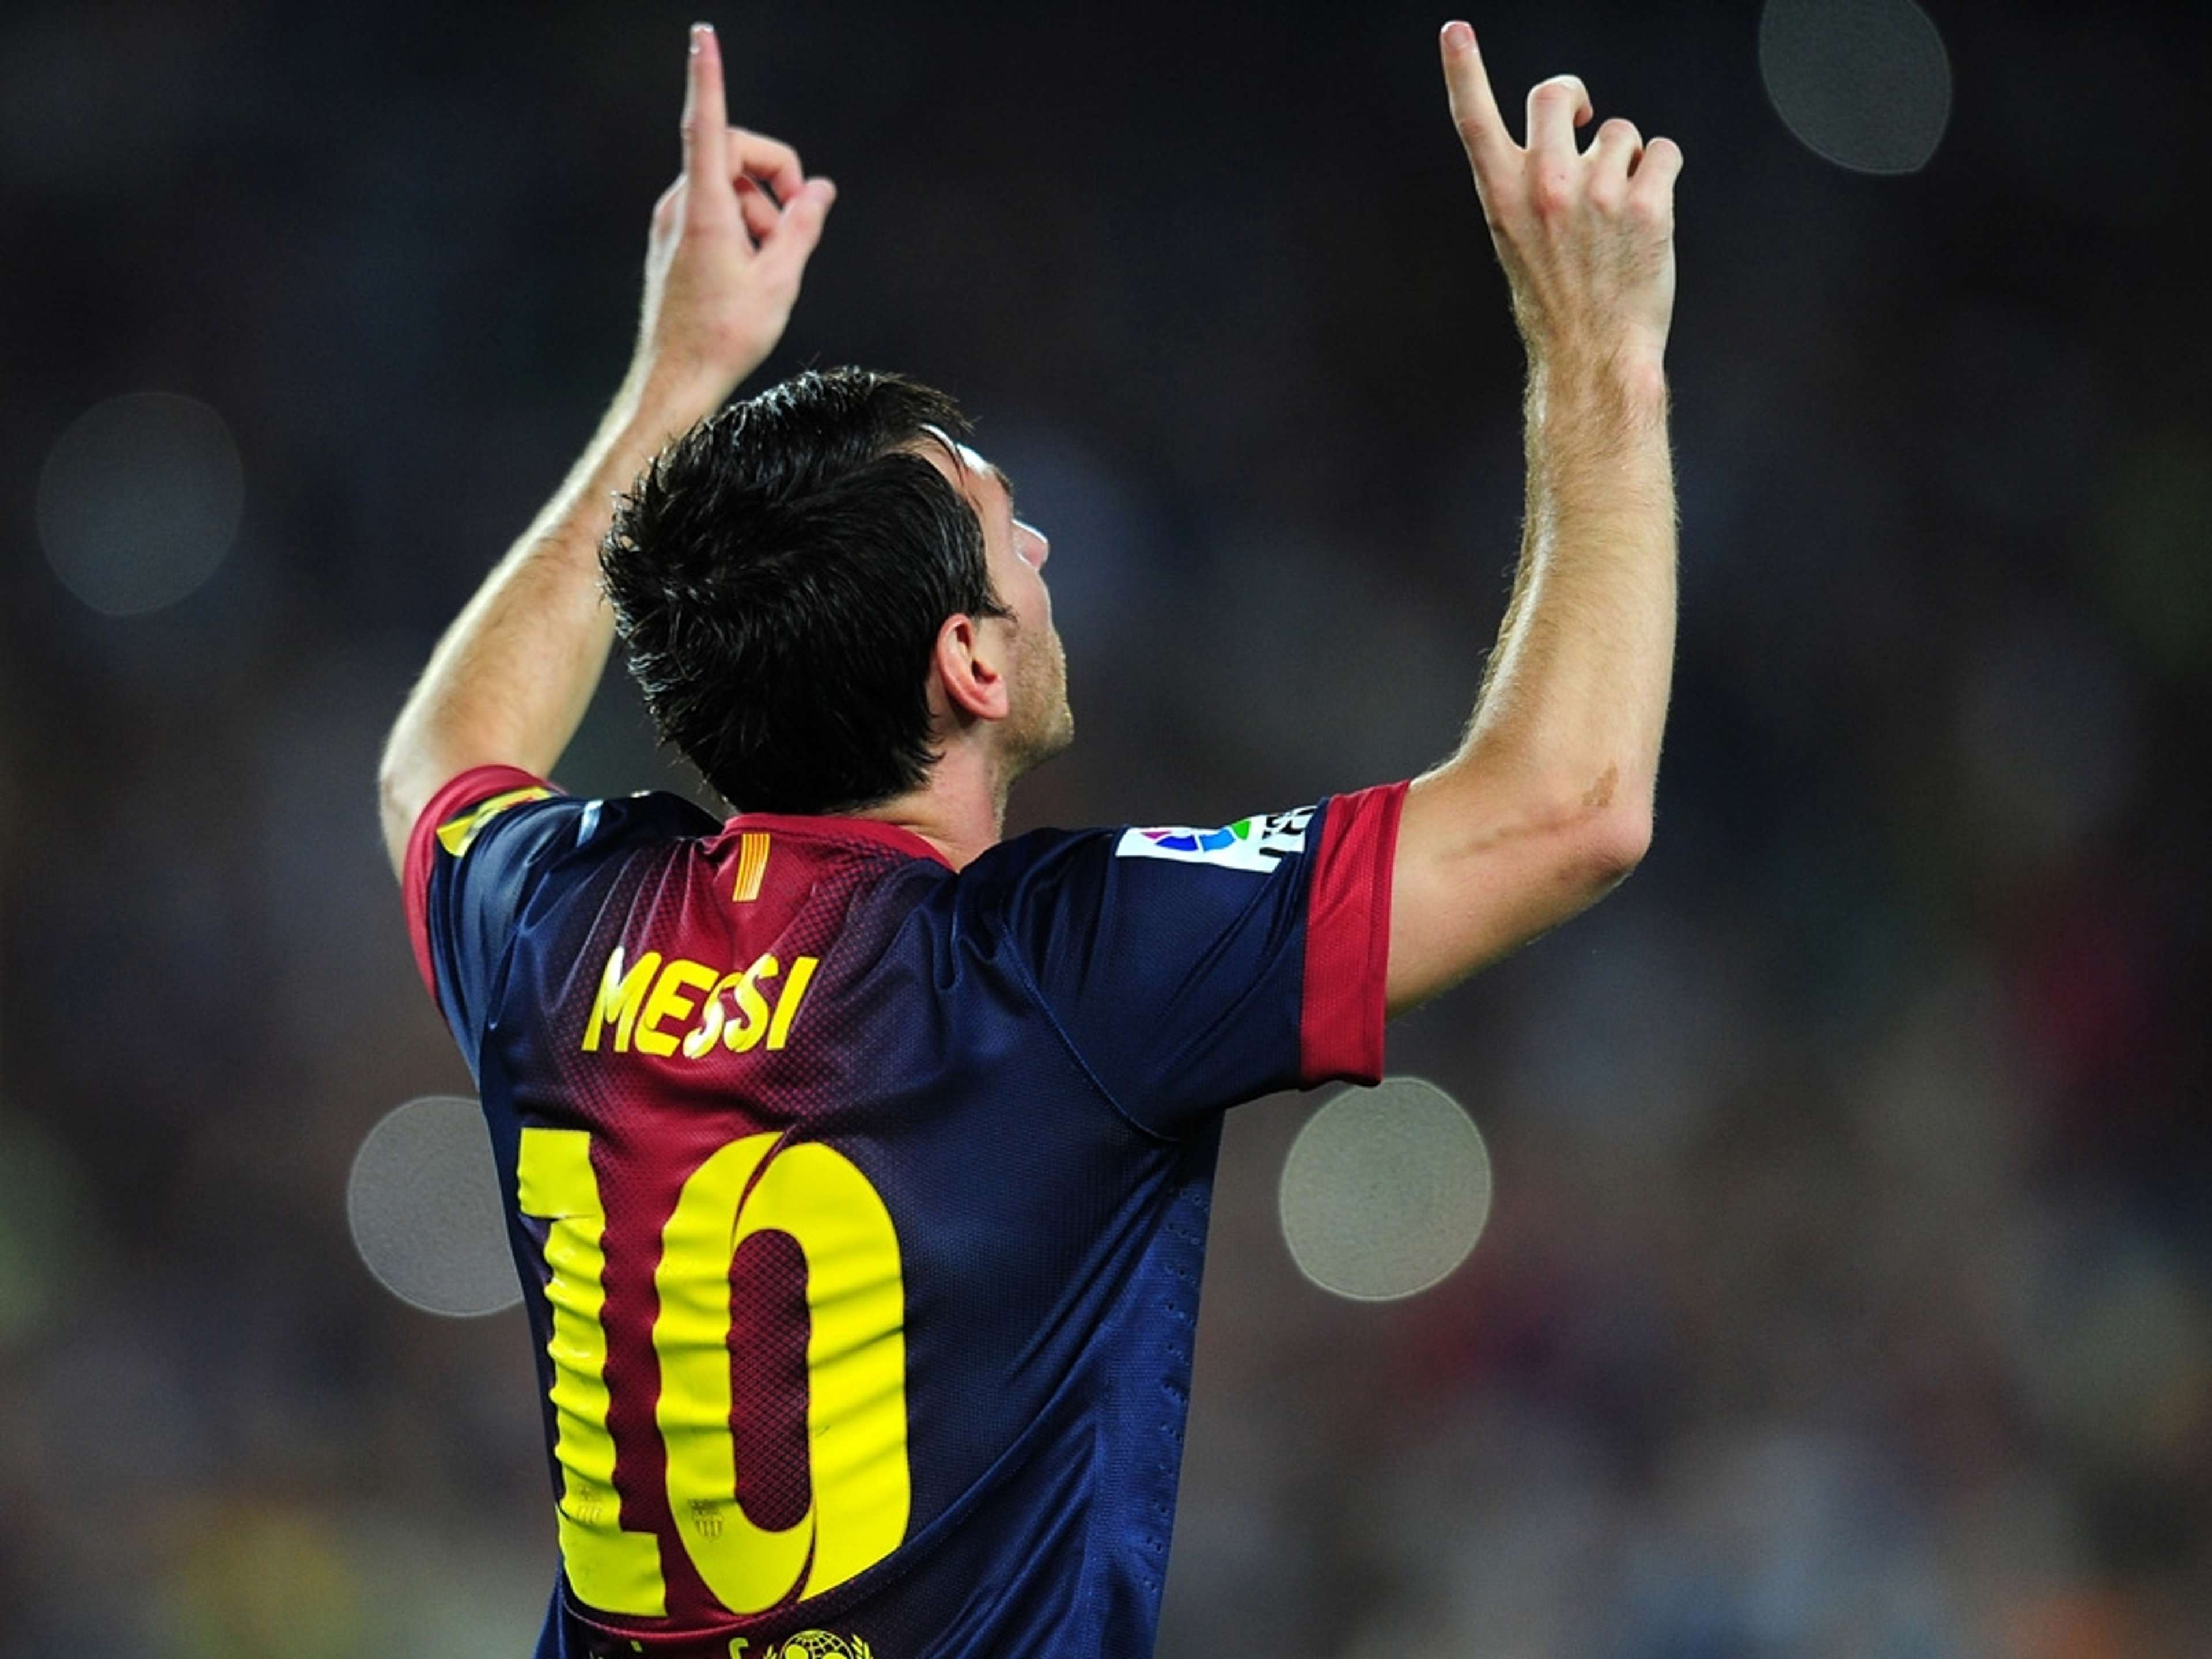 Messi Clasico goal 14, 2012